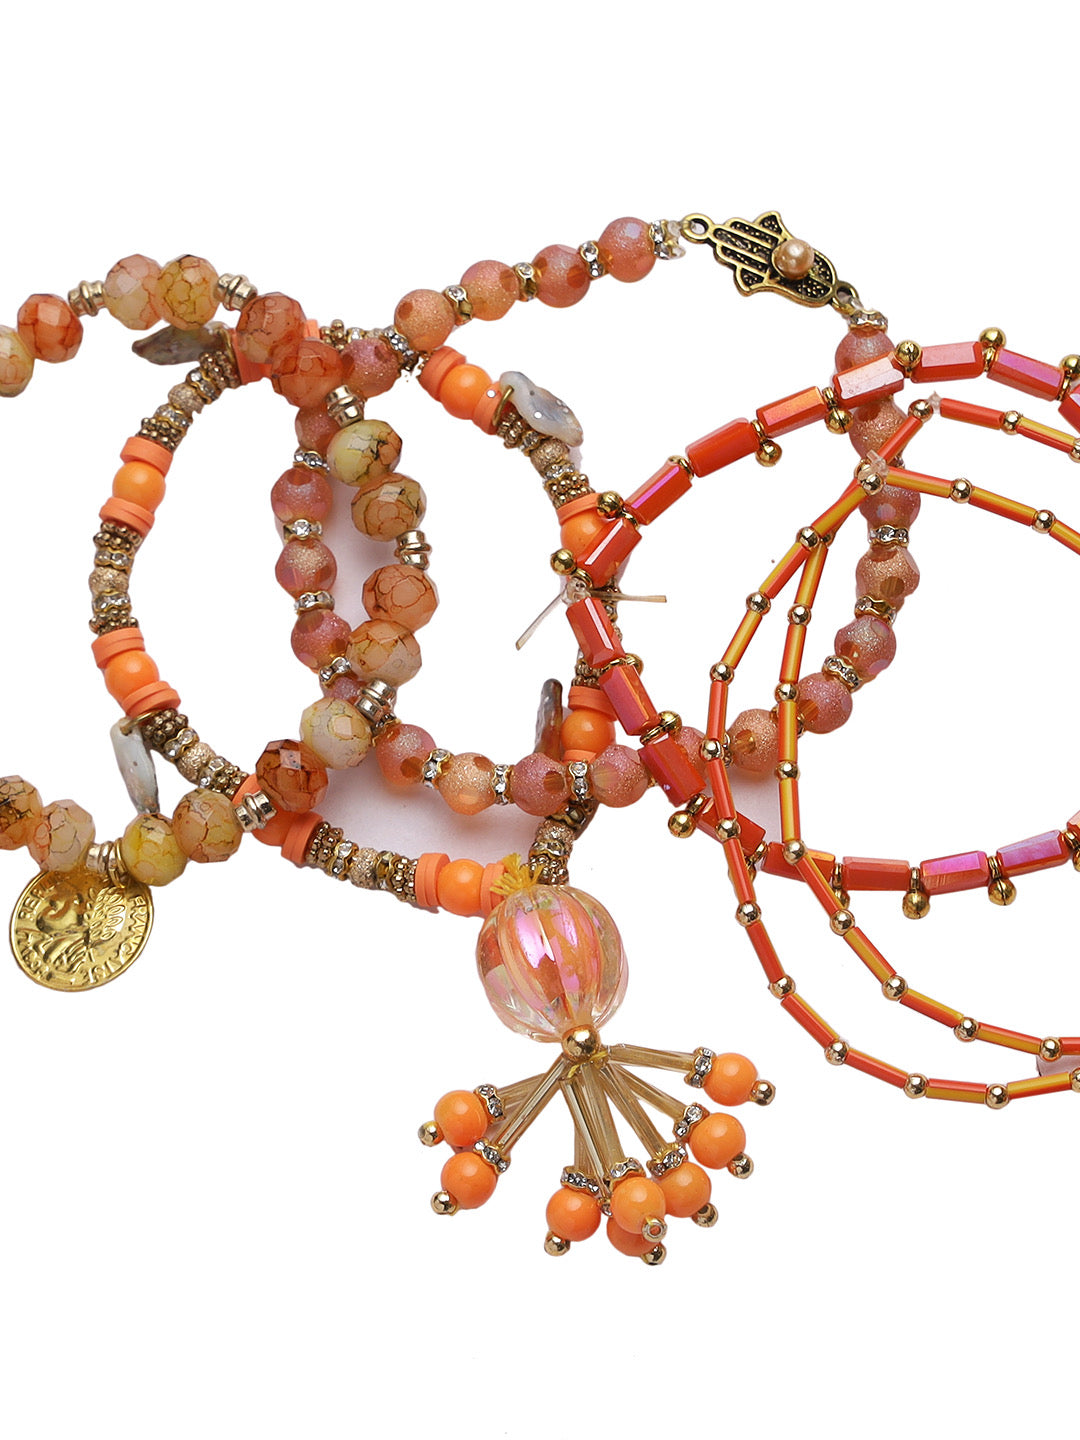 Brown & Orange Beads Bracelet Rakhi - Only Rakhi (LM22910)